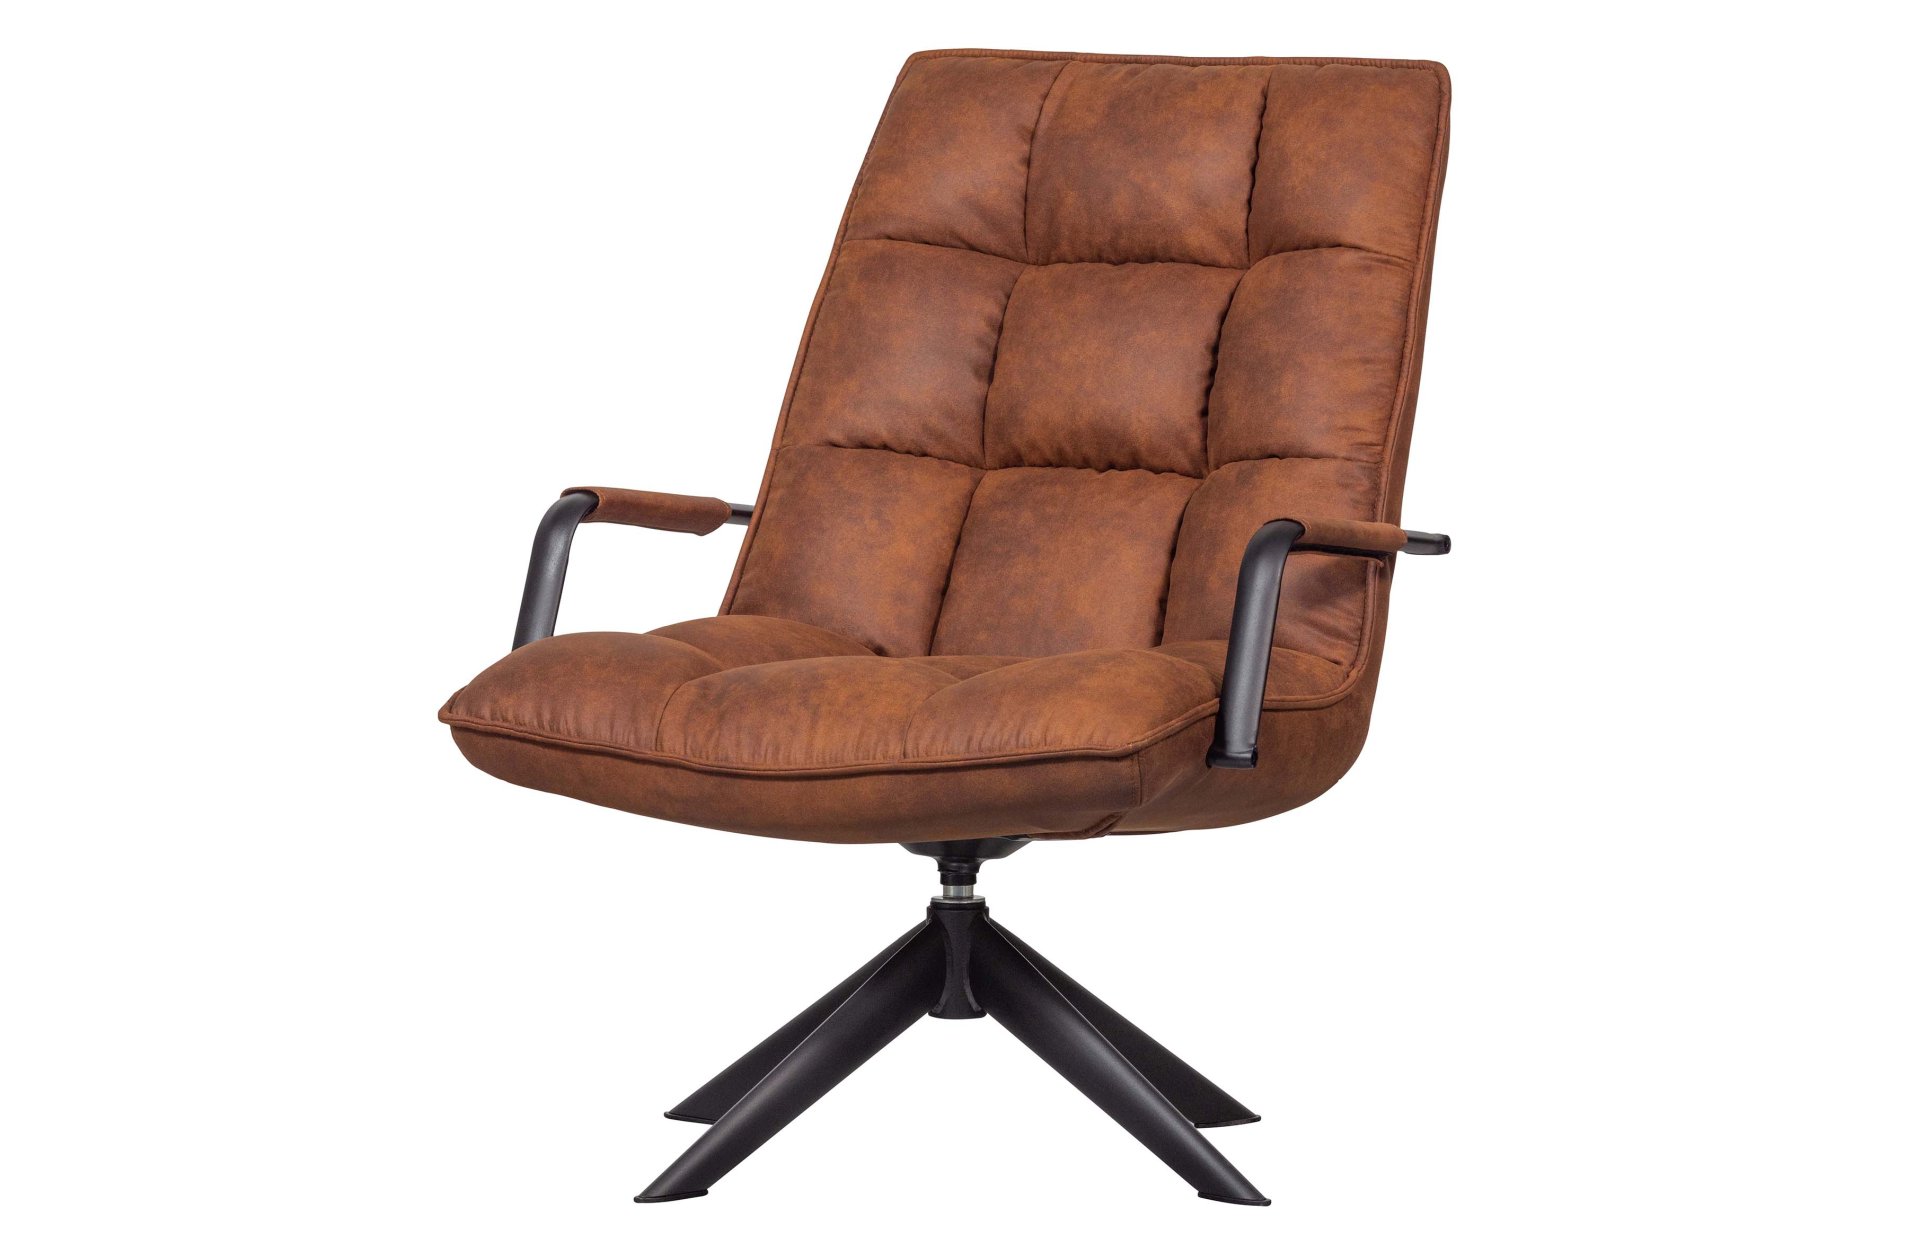 Der Drehsessel Jouke überzeugt mit seinem modernem Design. Gefertigt wurde er aus PU-Leder, welches einen Cognac Farbton besitzt. Das Gestell ist aus Metall und hat eine schwarze Farbe. Der Sessel hat eine Drehfunktion und besitzt eine Sitzhöhe von 43 cm.